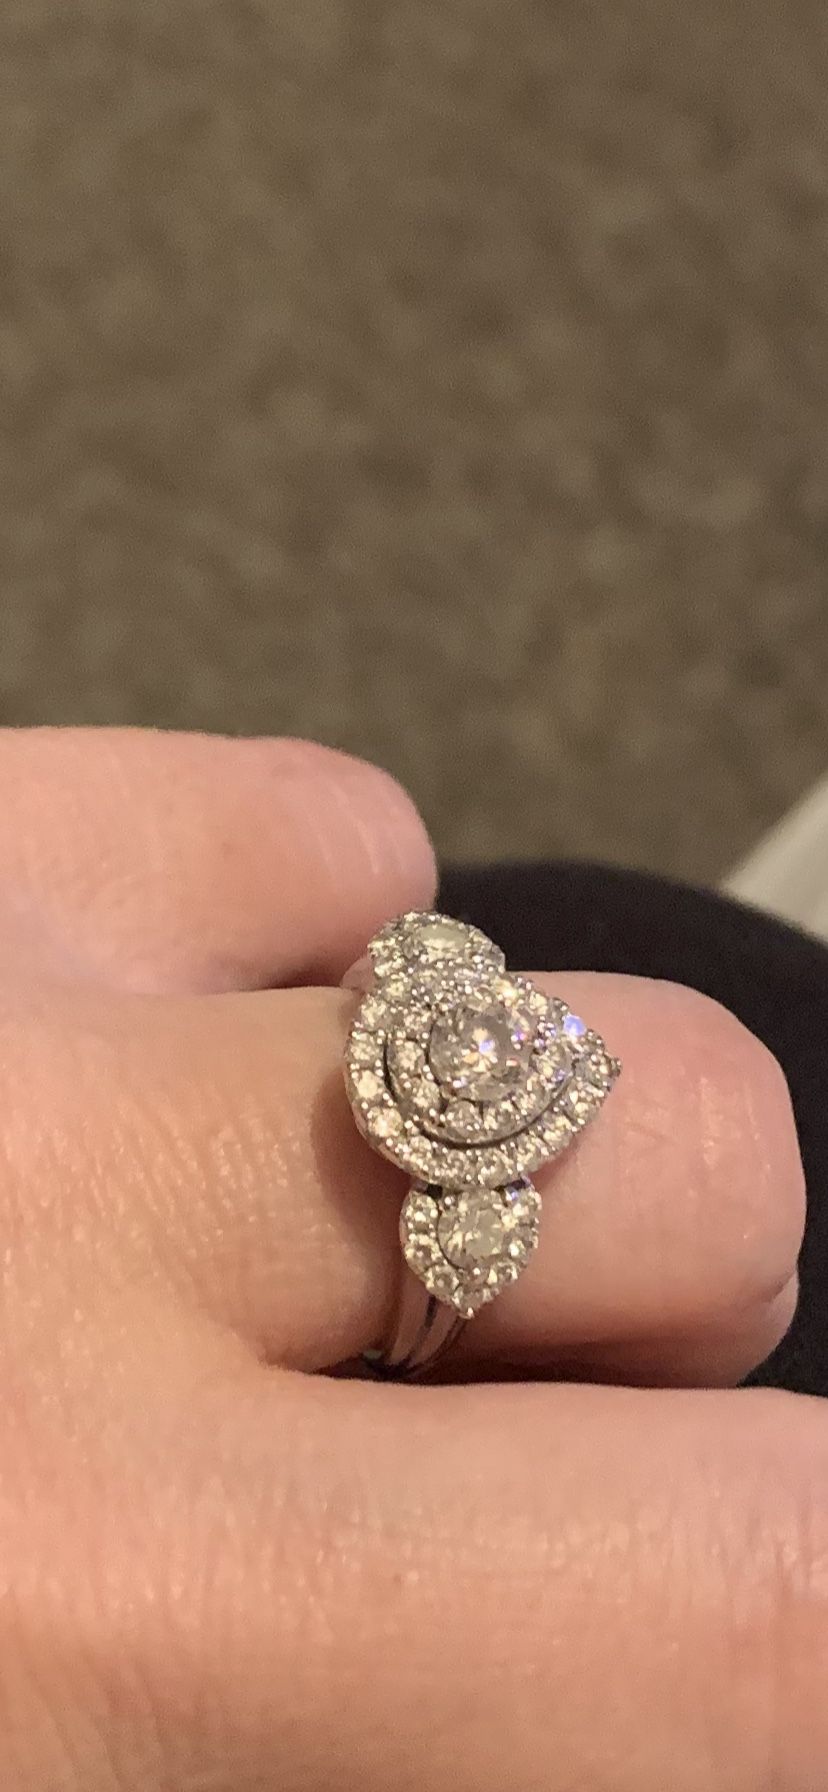 14k White Gold Engagement ring 1 1/2 carat